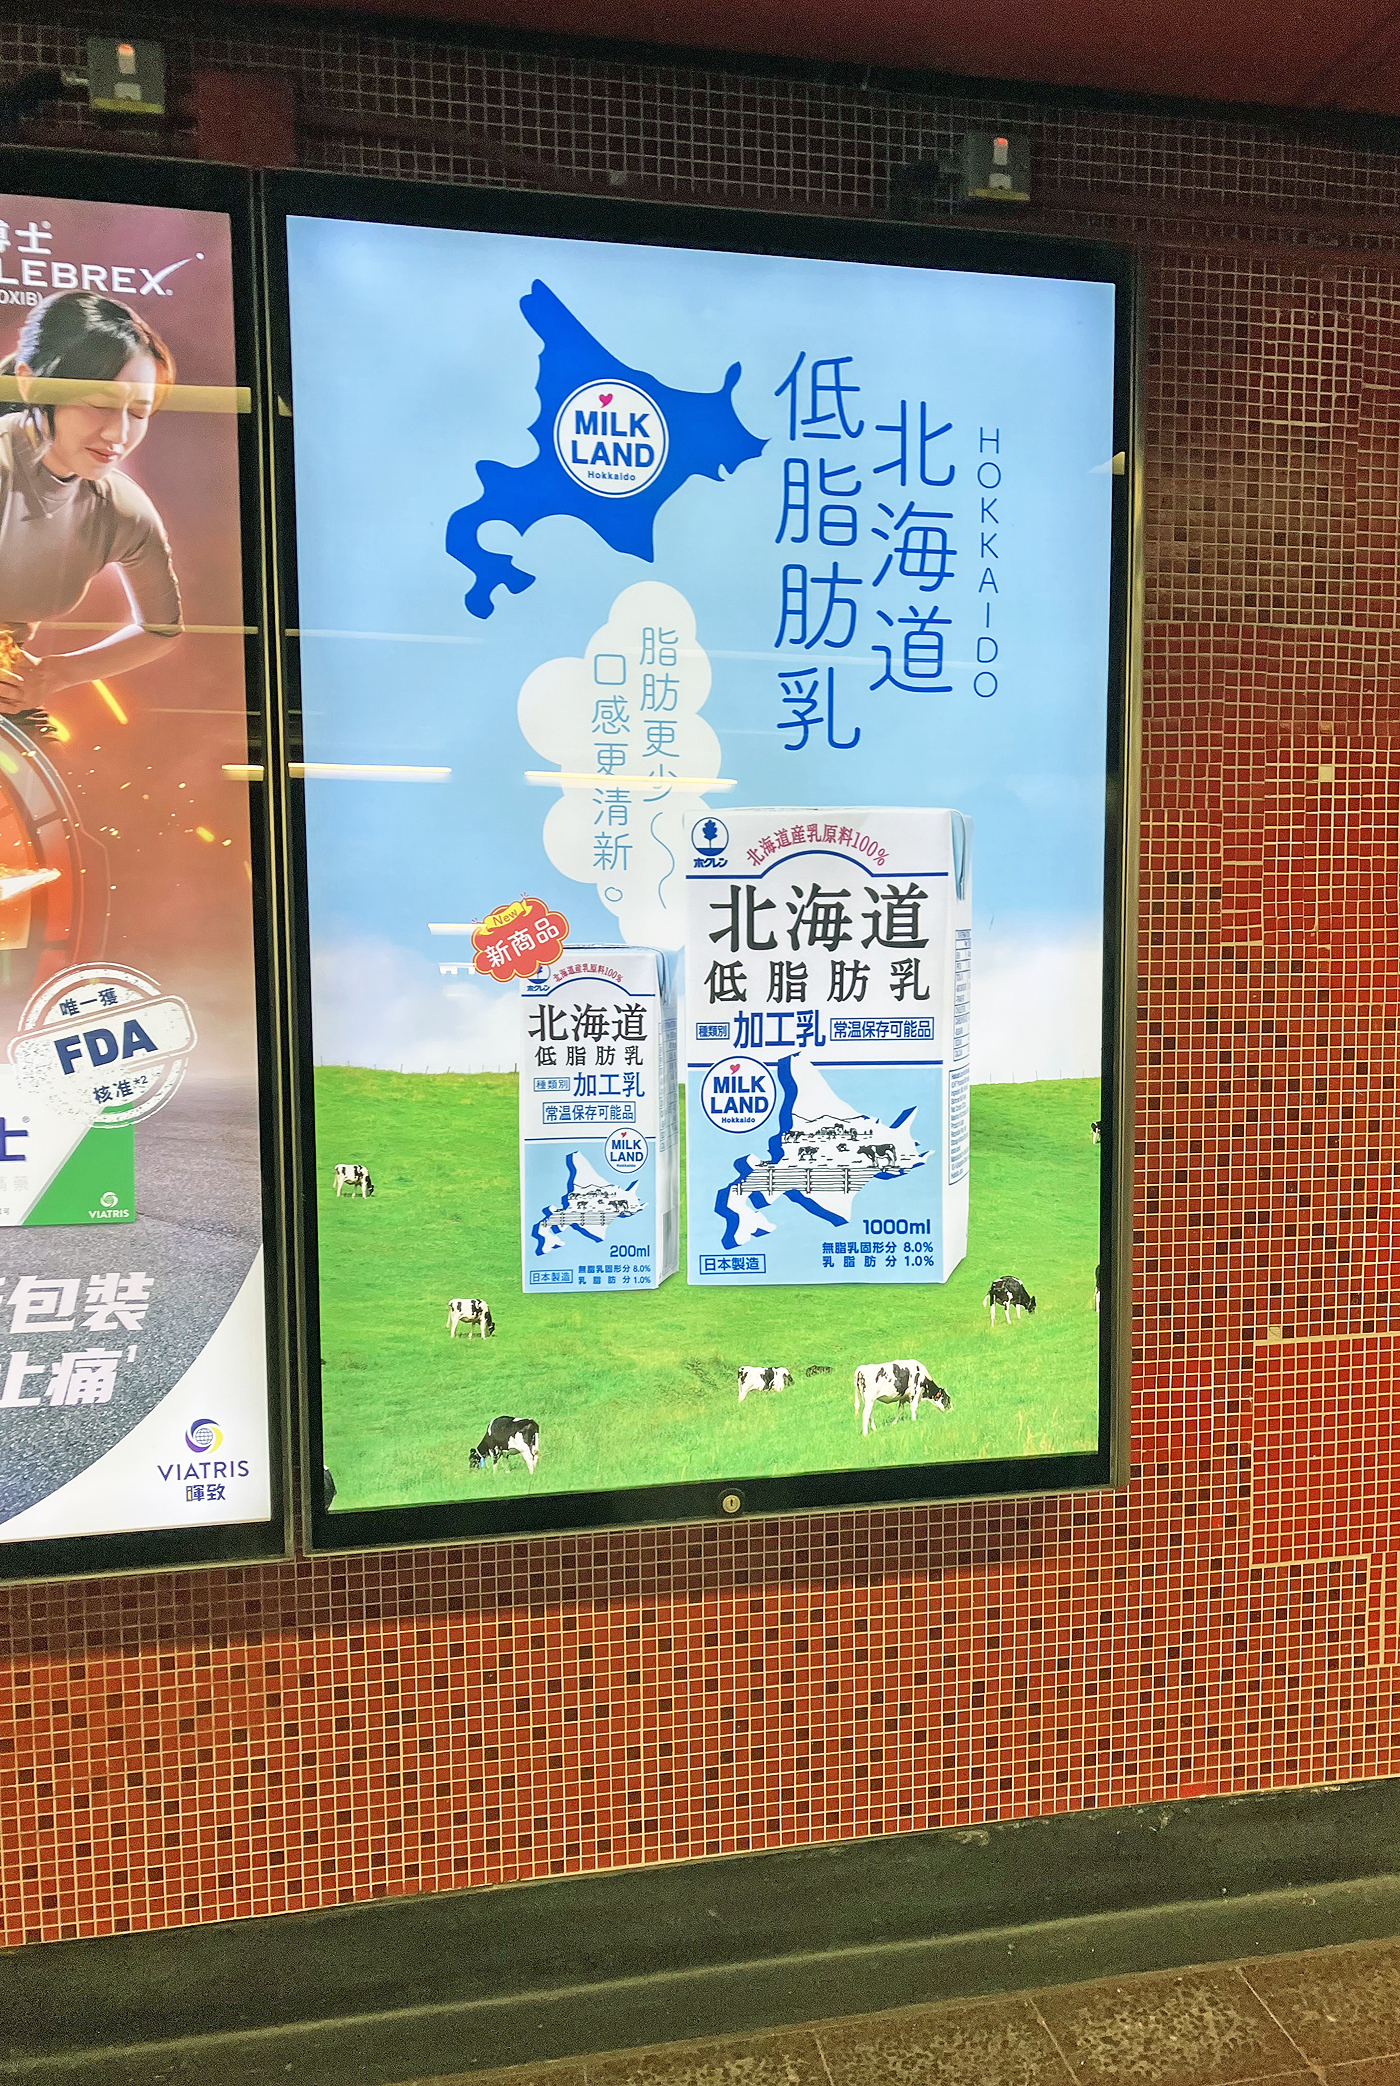 ホクレンが小容量タイプ低脂肪乳の発売開始に合わせて香港の地下鉄構内に掲載したポスター広告